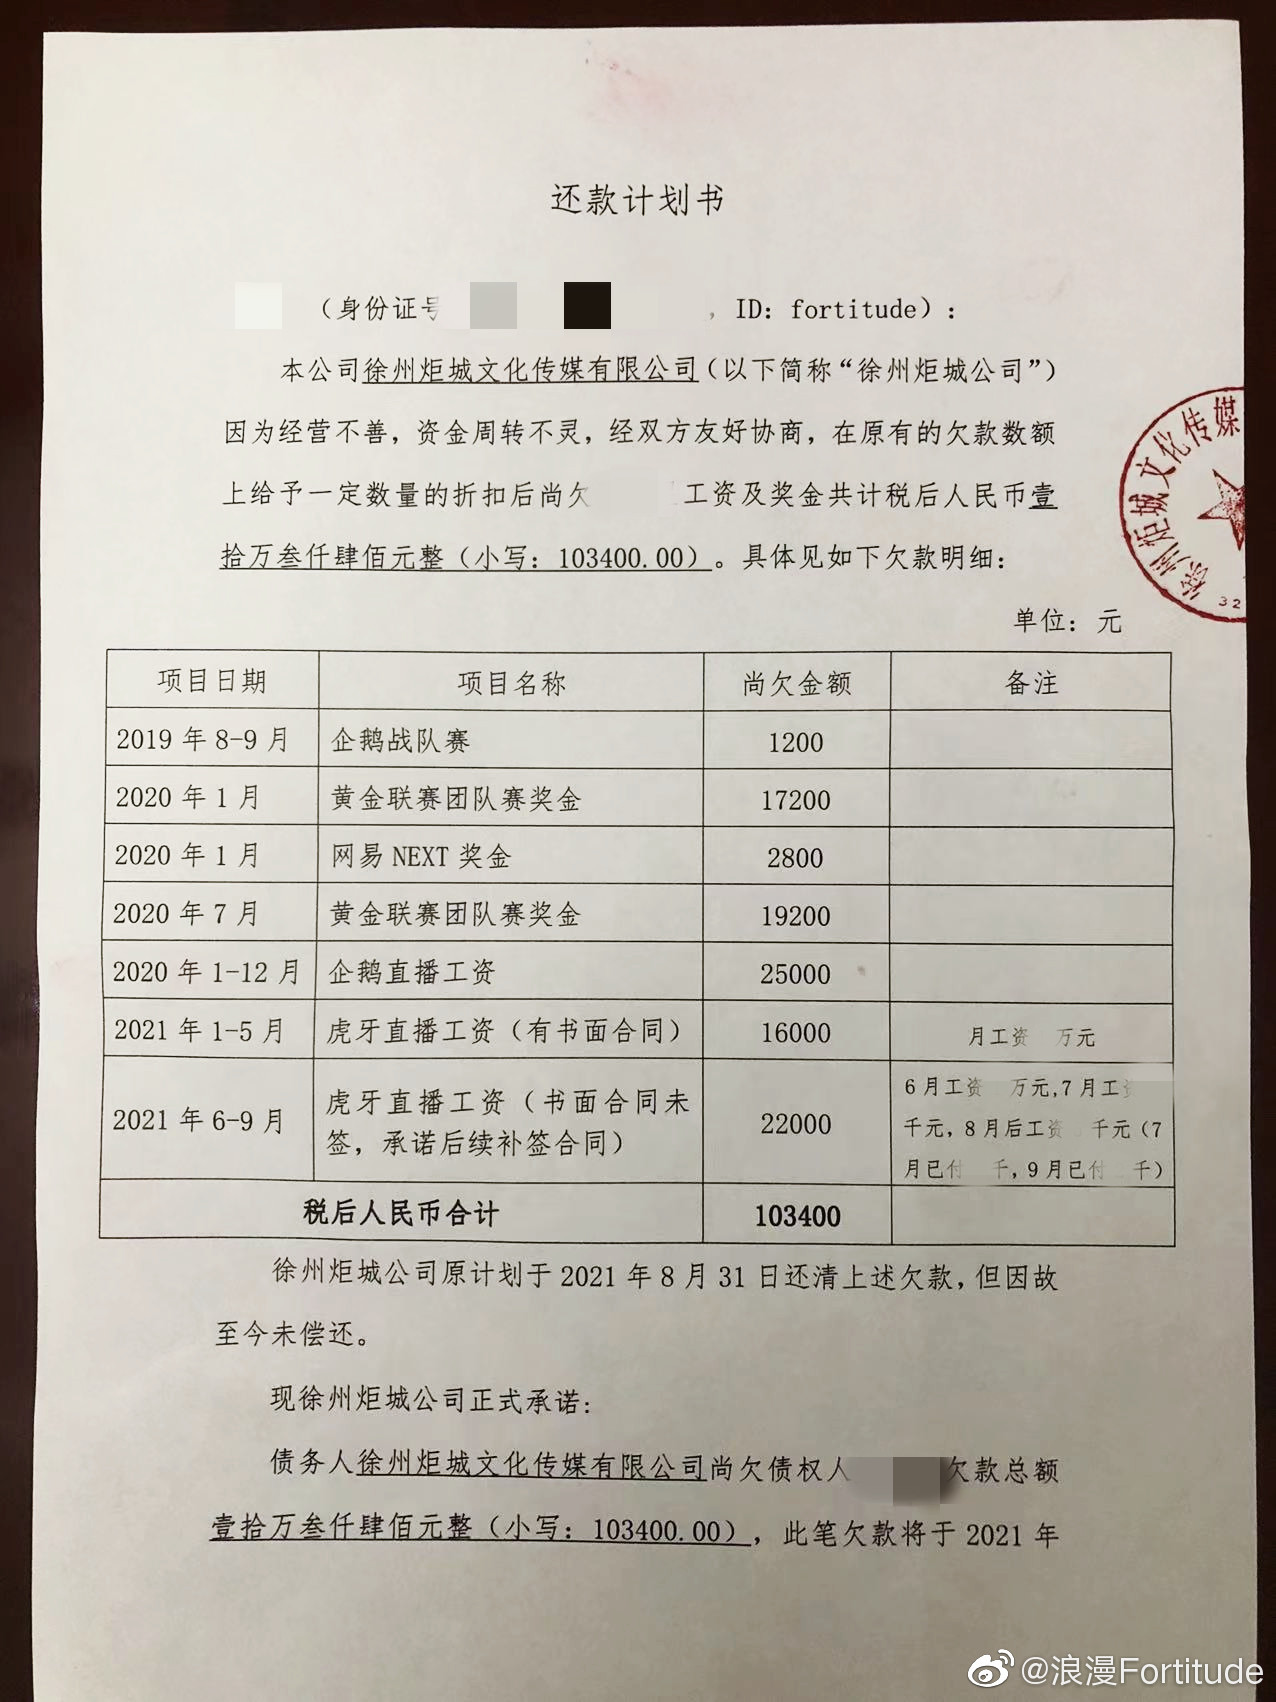 Китайская команда LP Club не выплачивает деньги своим варкрафтерам